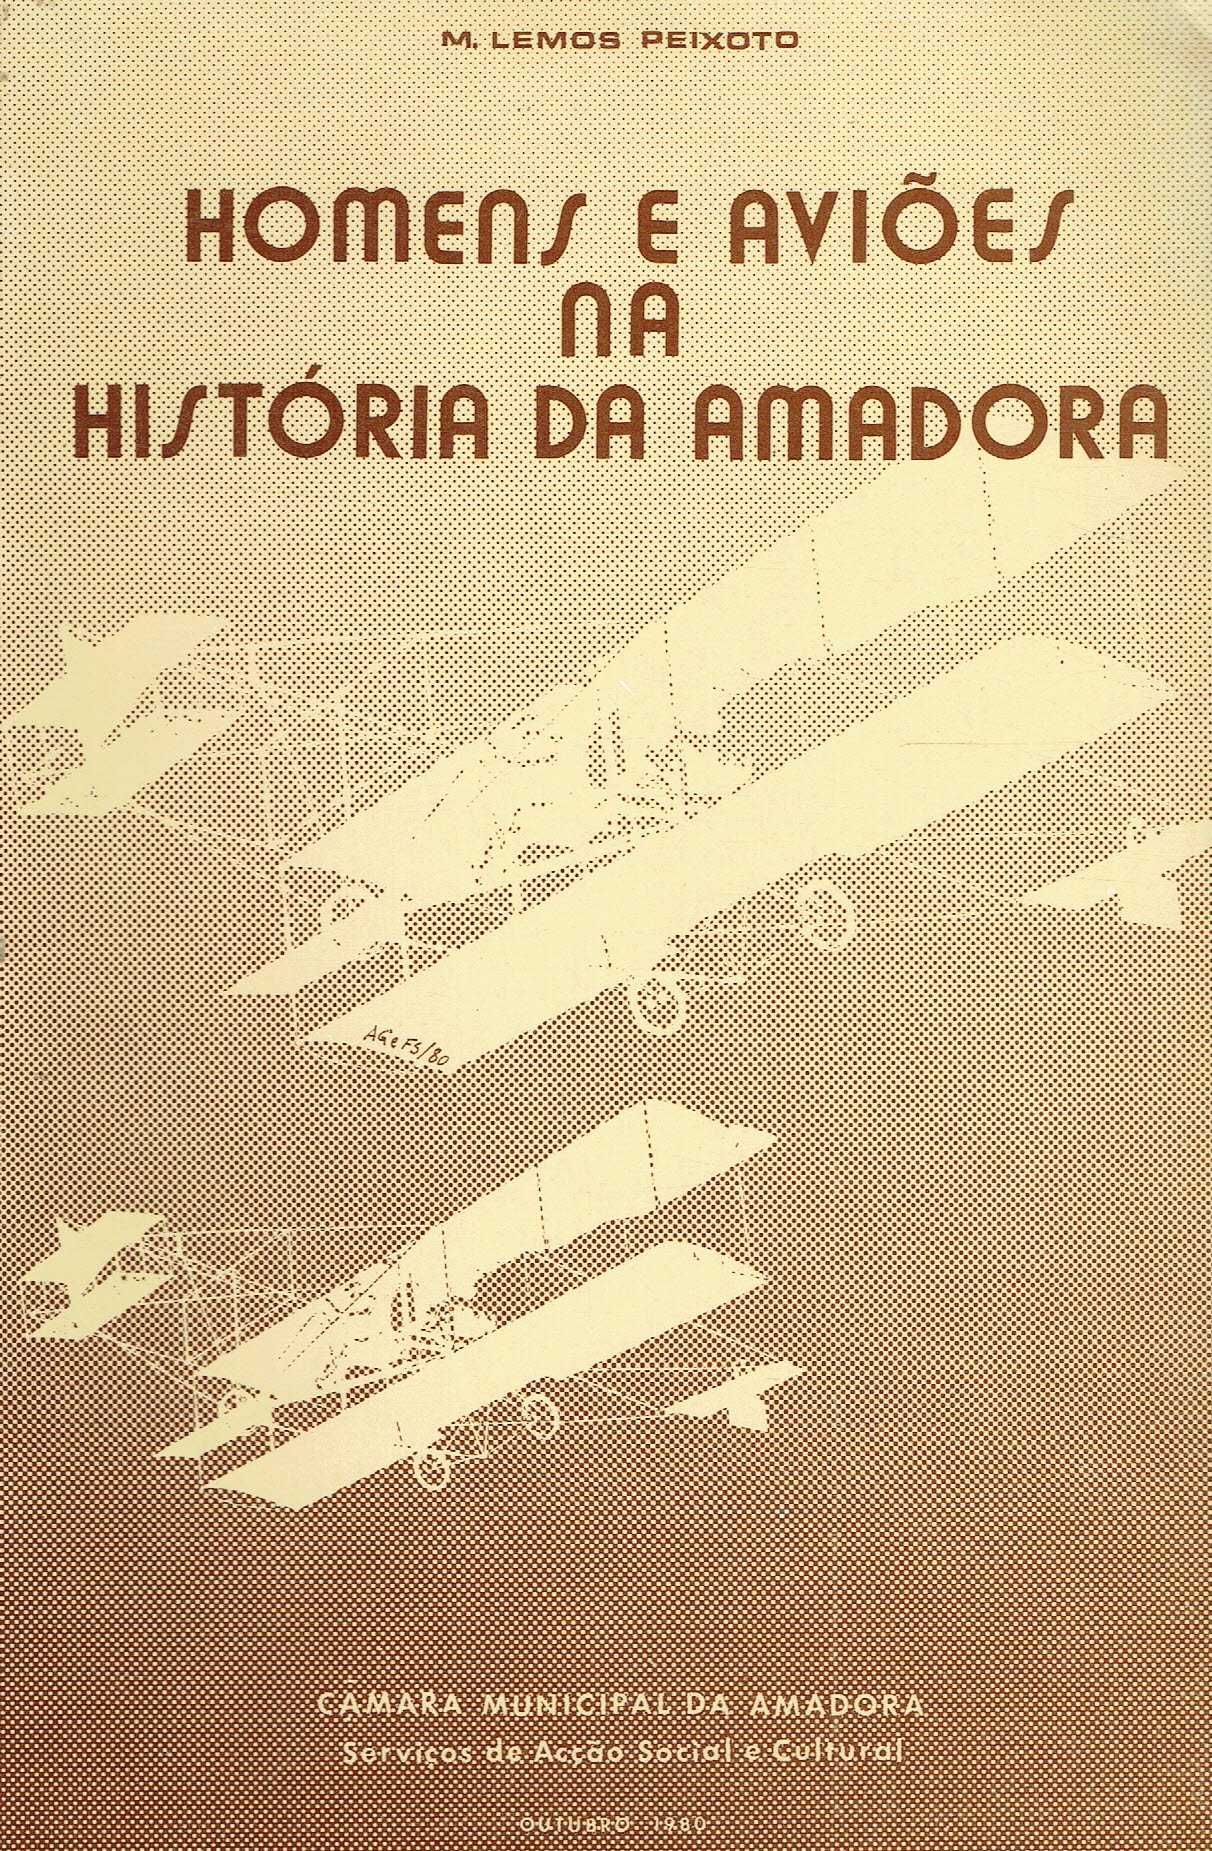 11066

Homens e aviões na história da Amadora 
de M. Lemos Peixoto